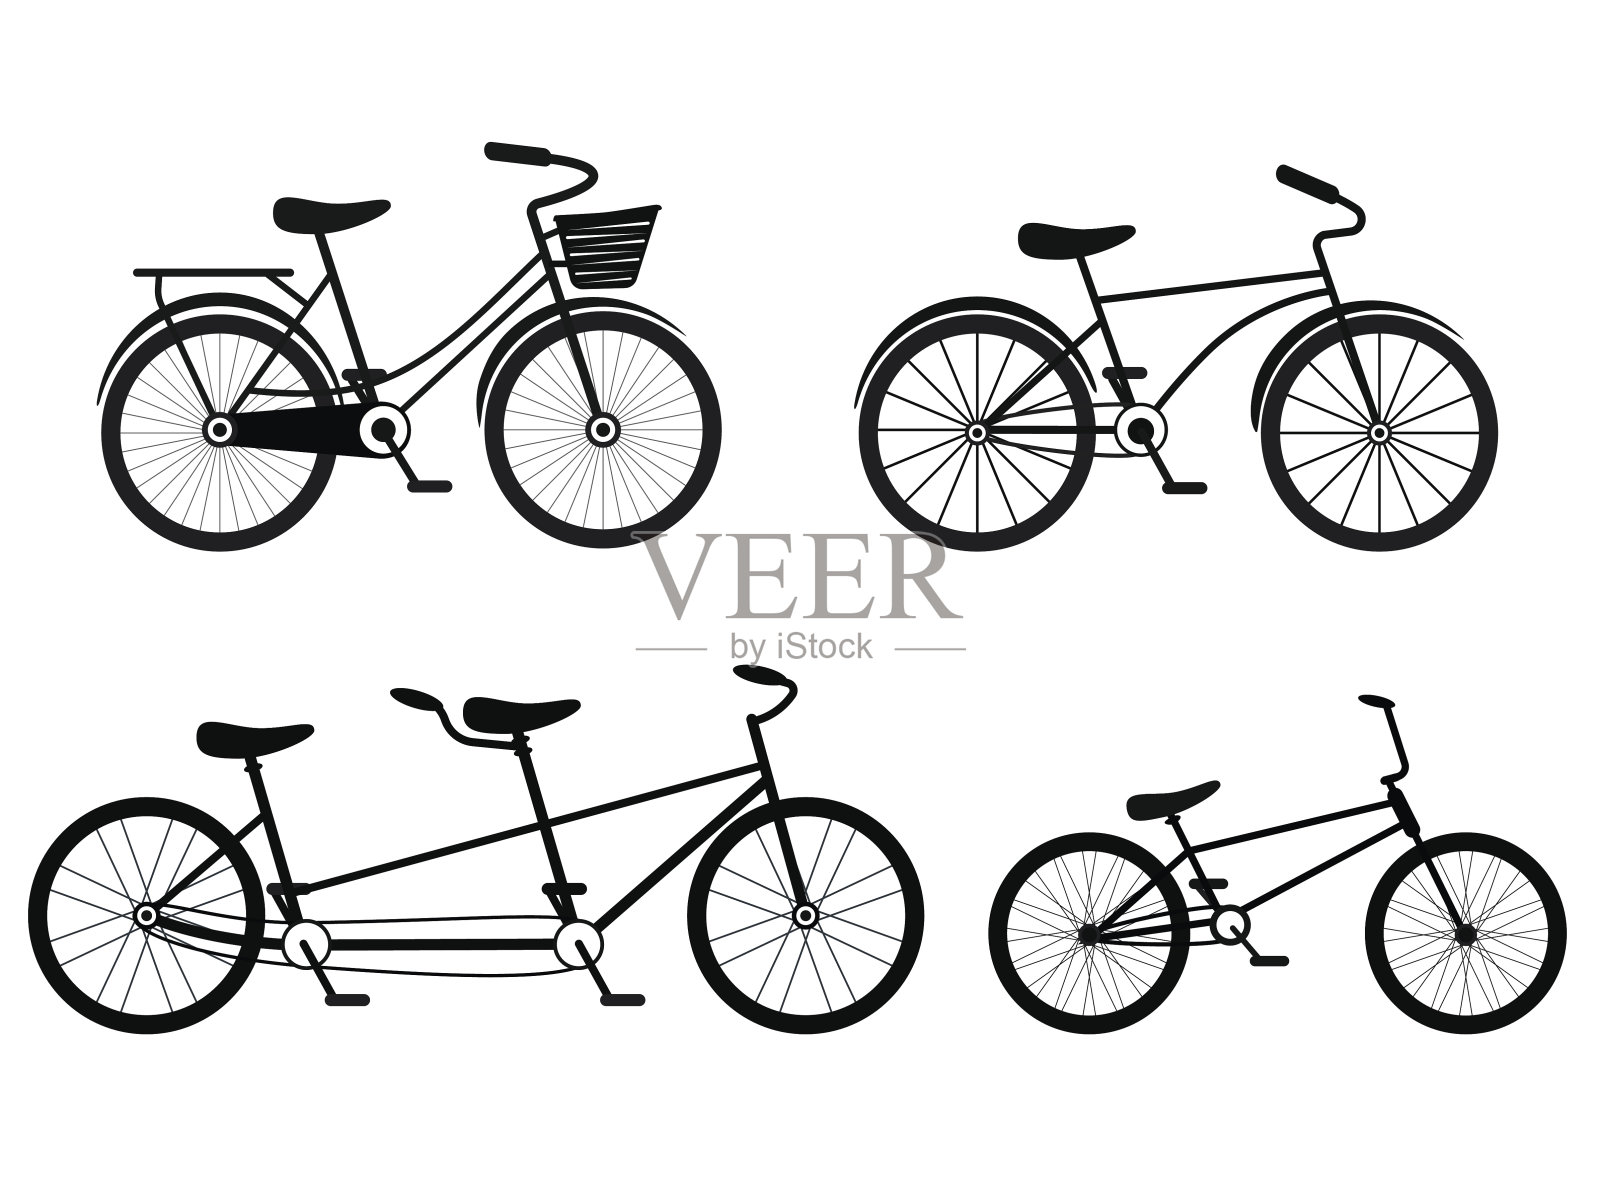 不同风格的自行车剪影集。向量设计元素图片